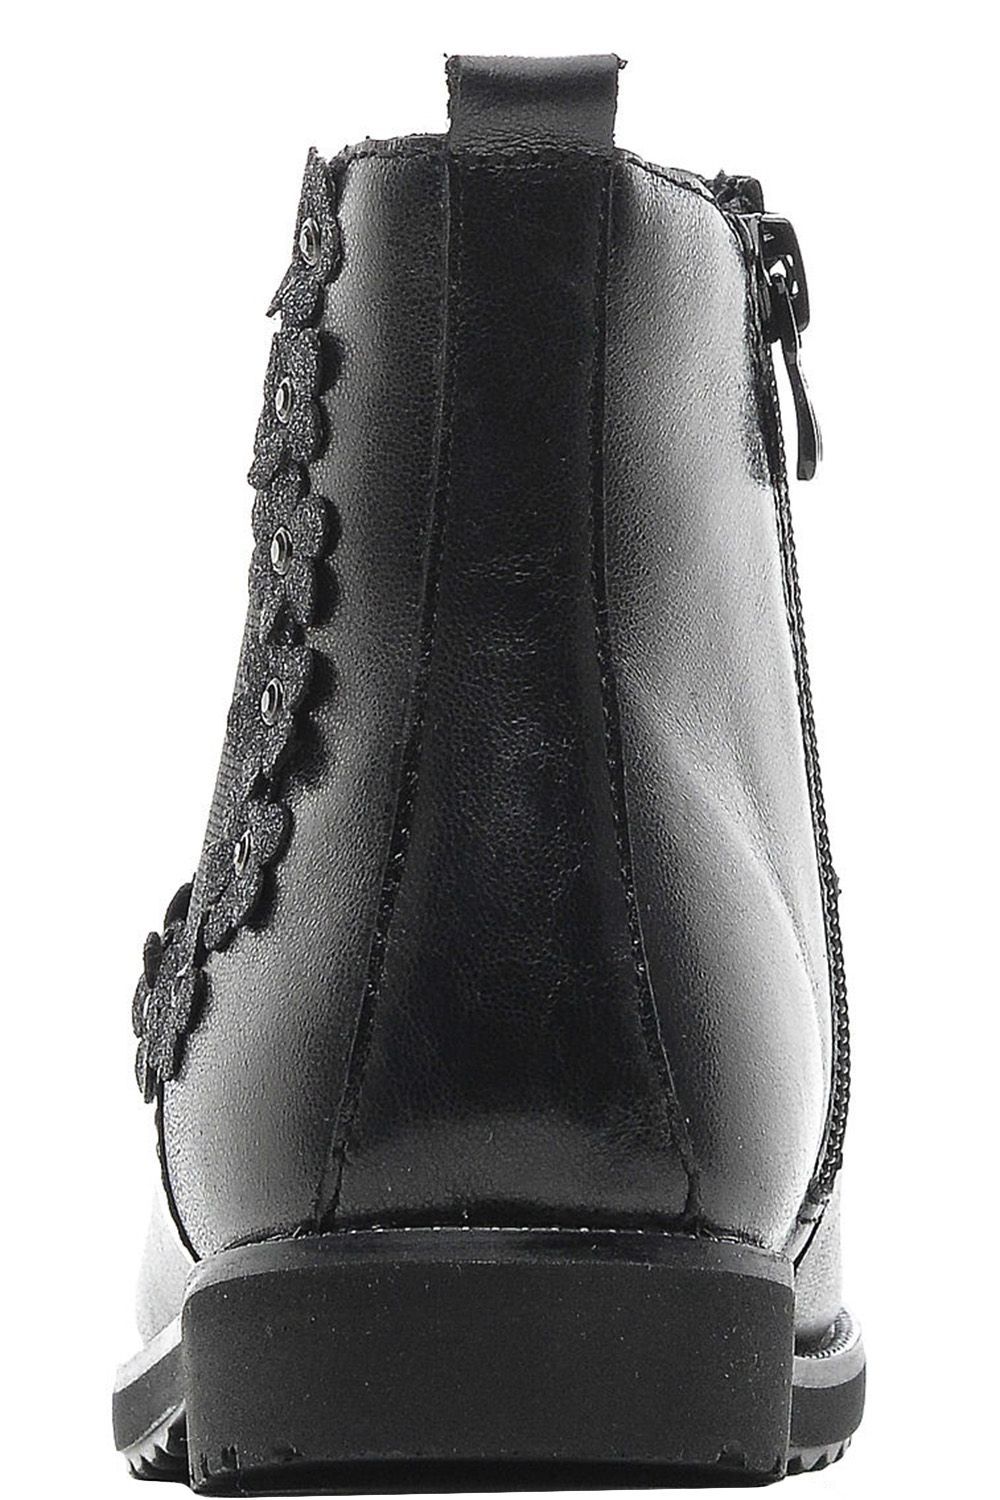 Ботинки Kapika, размер 33, цвет черный 53298y-1 - фото 4